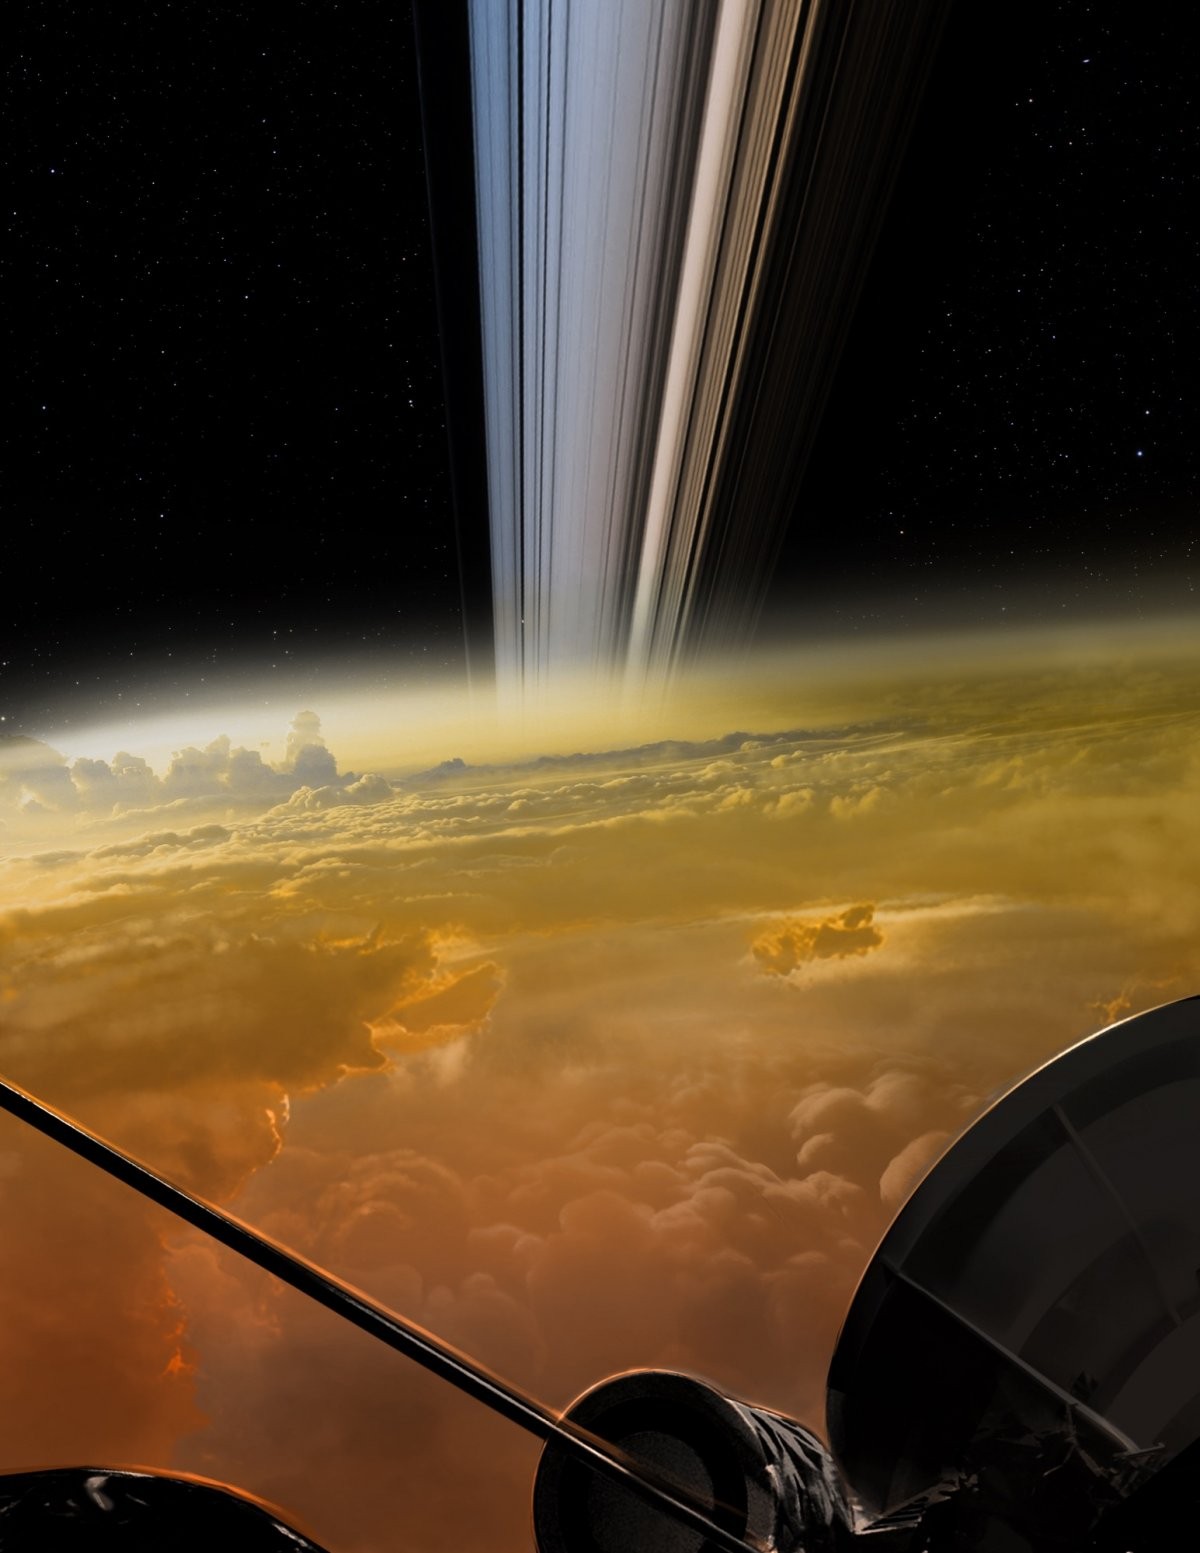 Representação artística do que Cassini pode ter visto durante seus últimos mergulhos nas nuvens de Saturno (Foto: NASA/JPL-Caltech)